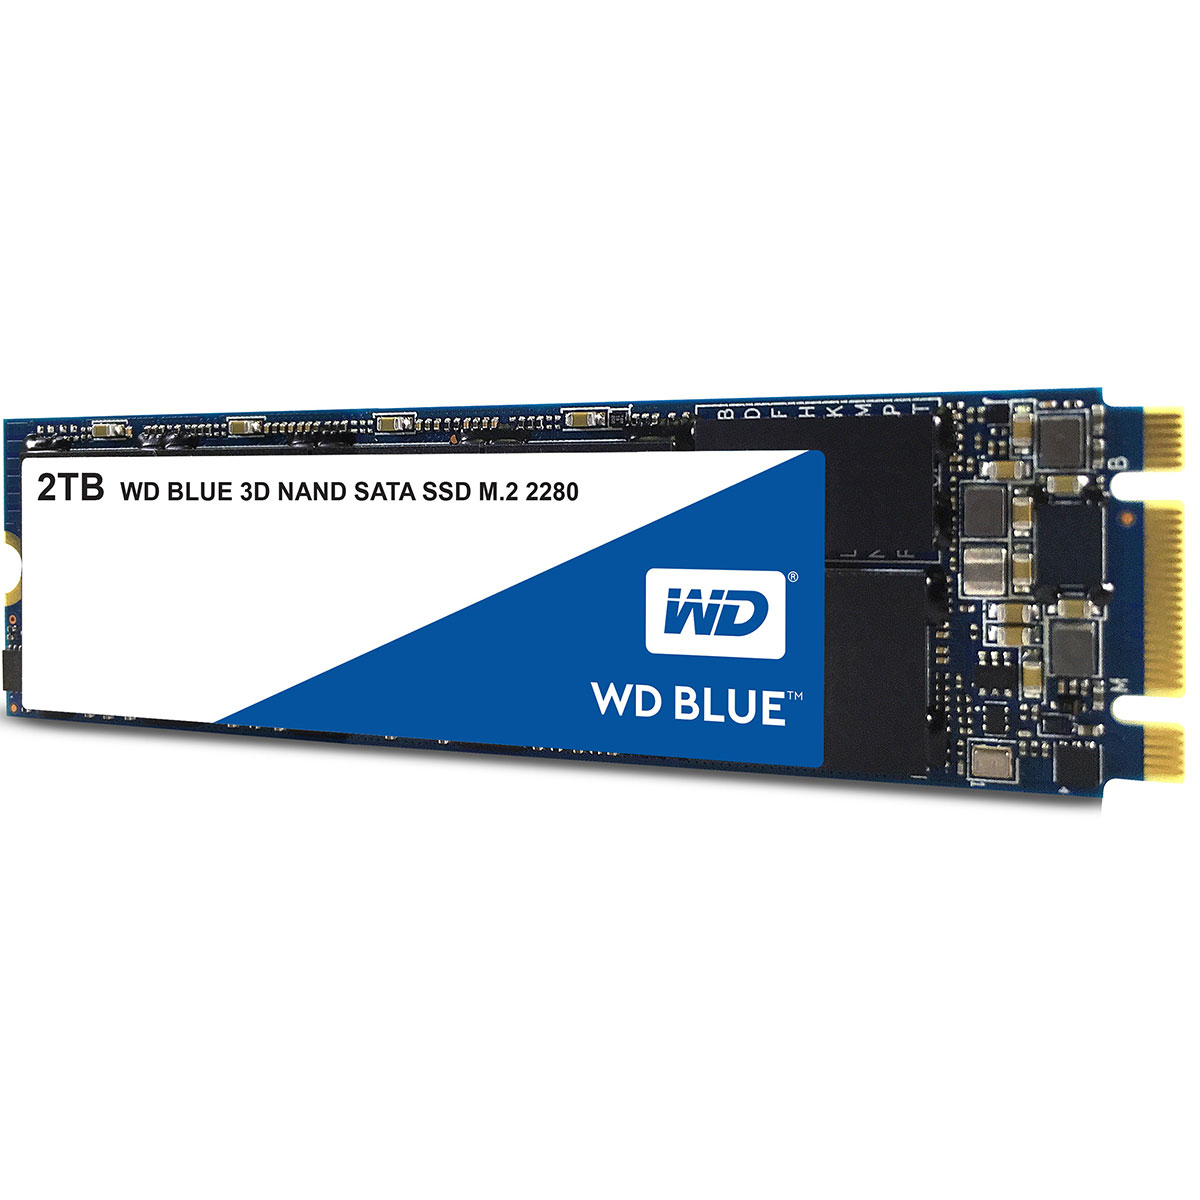 Tung lastbil faktor katolsk WD Blue 3D Nand M.2 Intern SSD 2TB (SATA III)